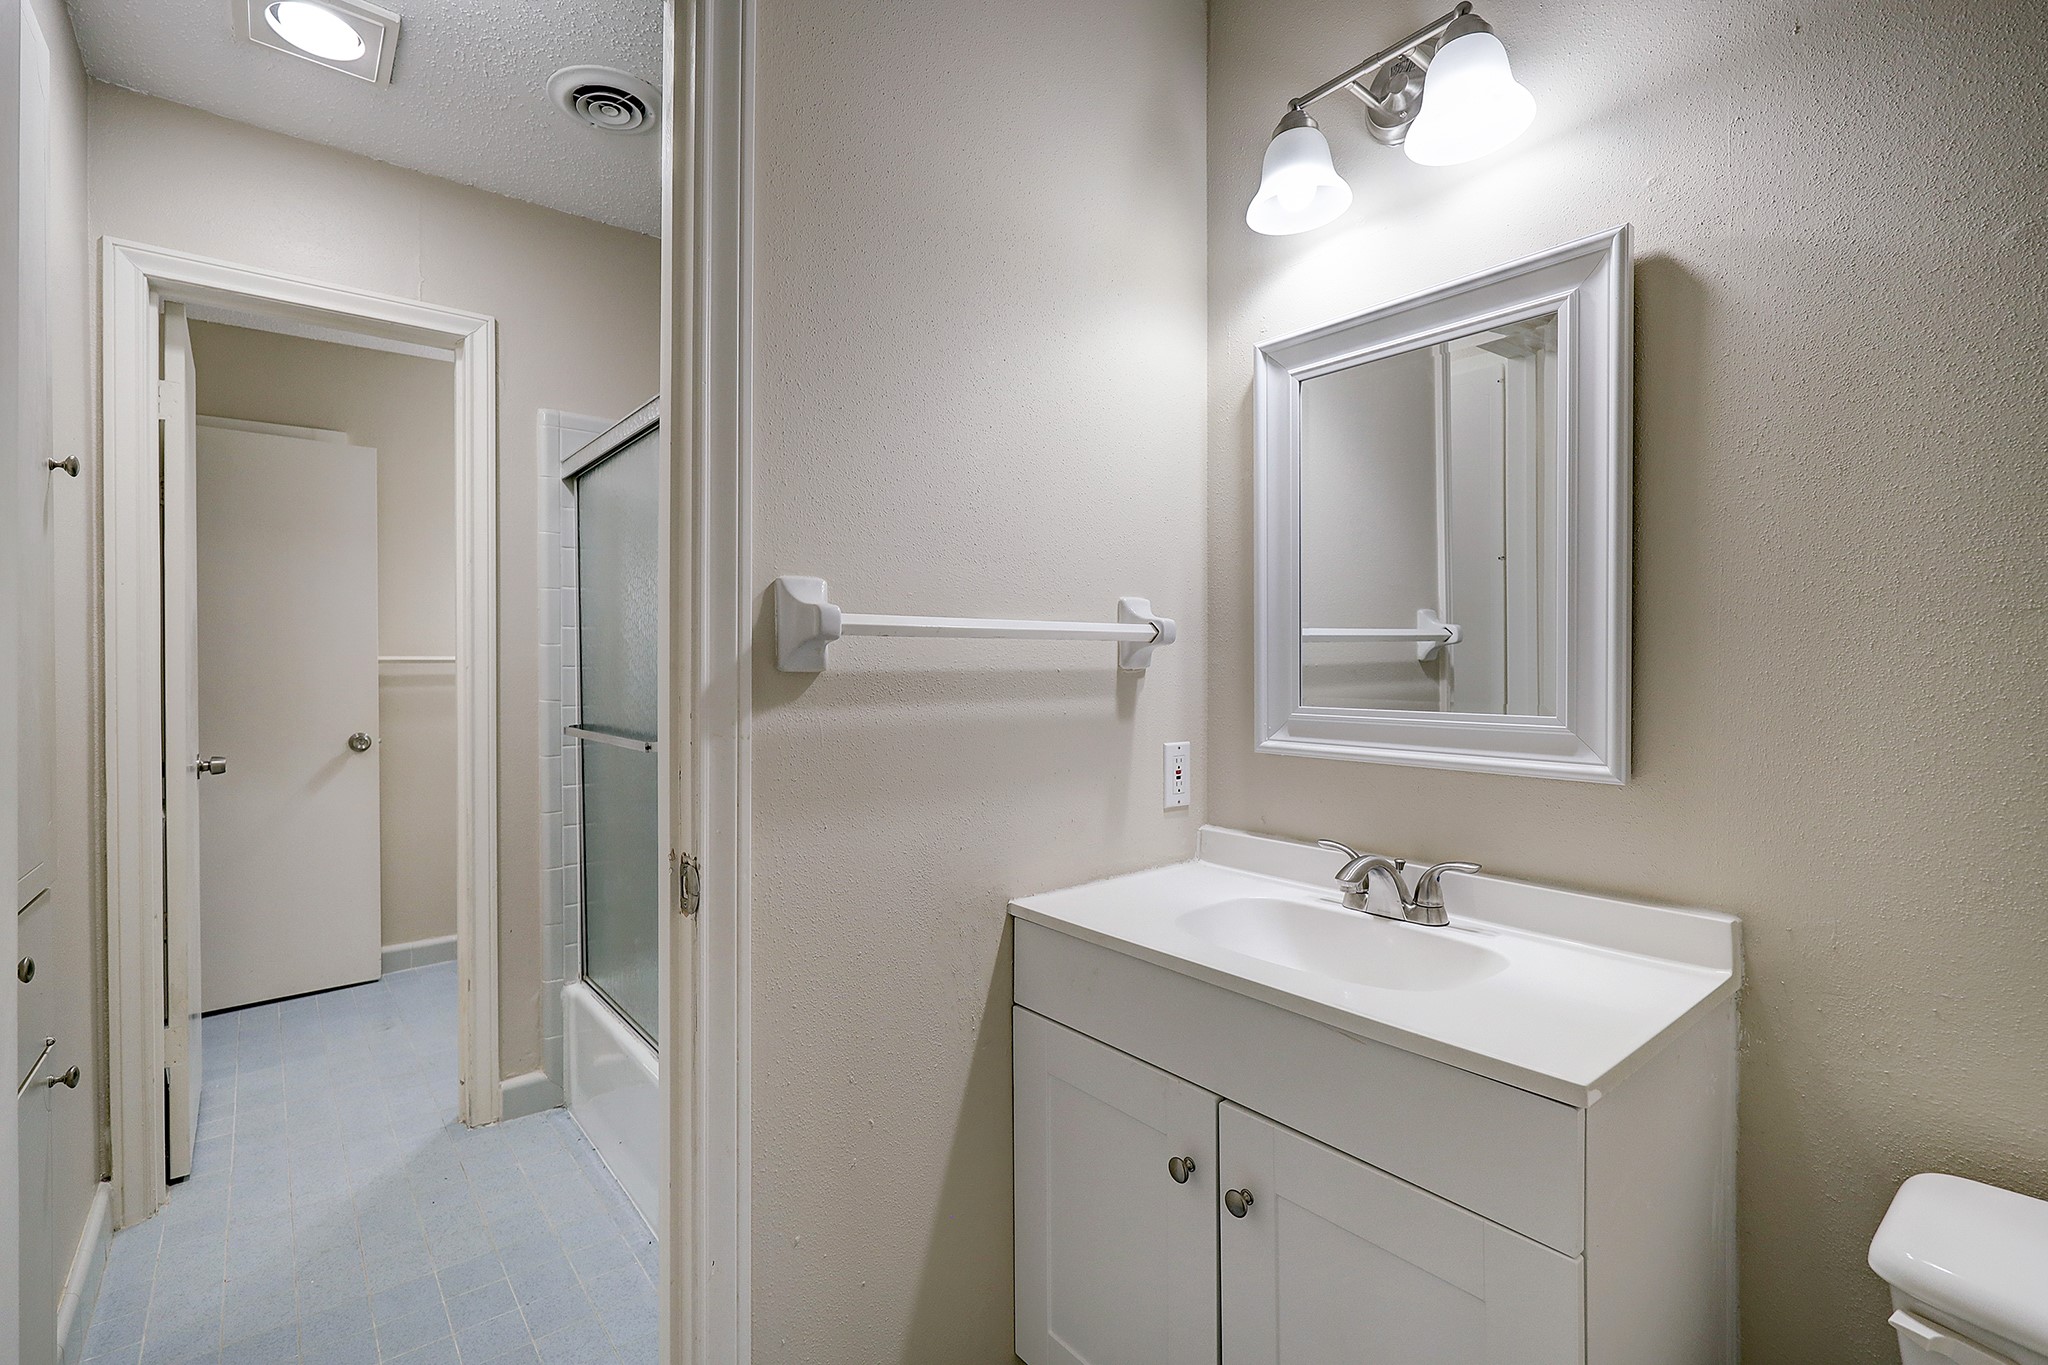 En-suite Hollywood bathrooms have two new vanities.